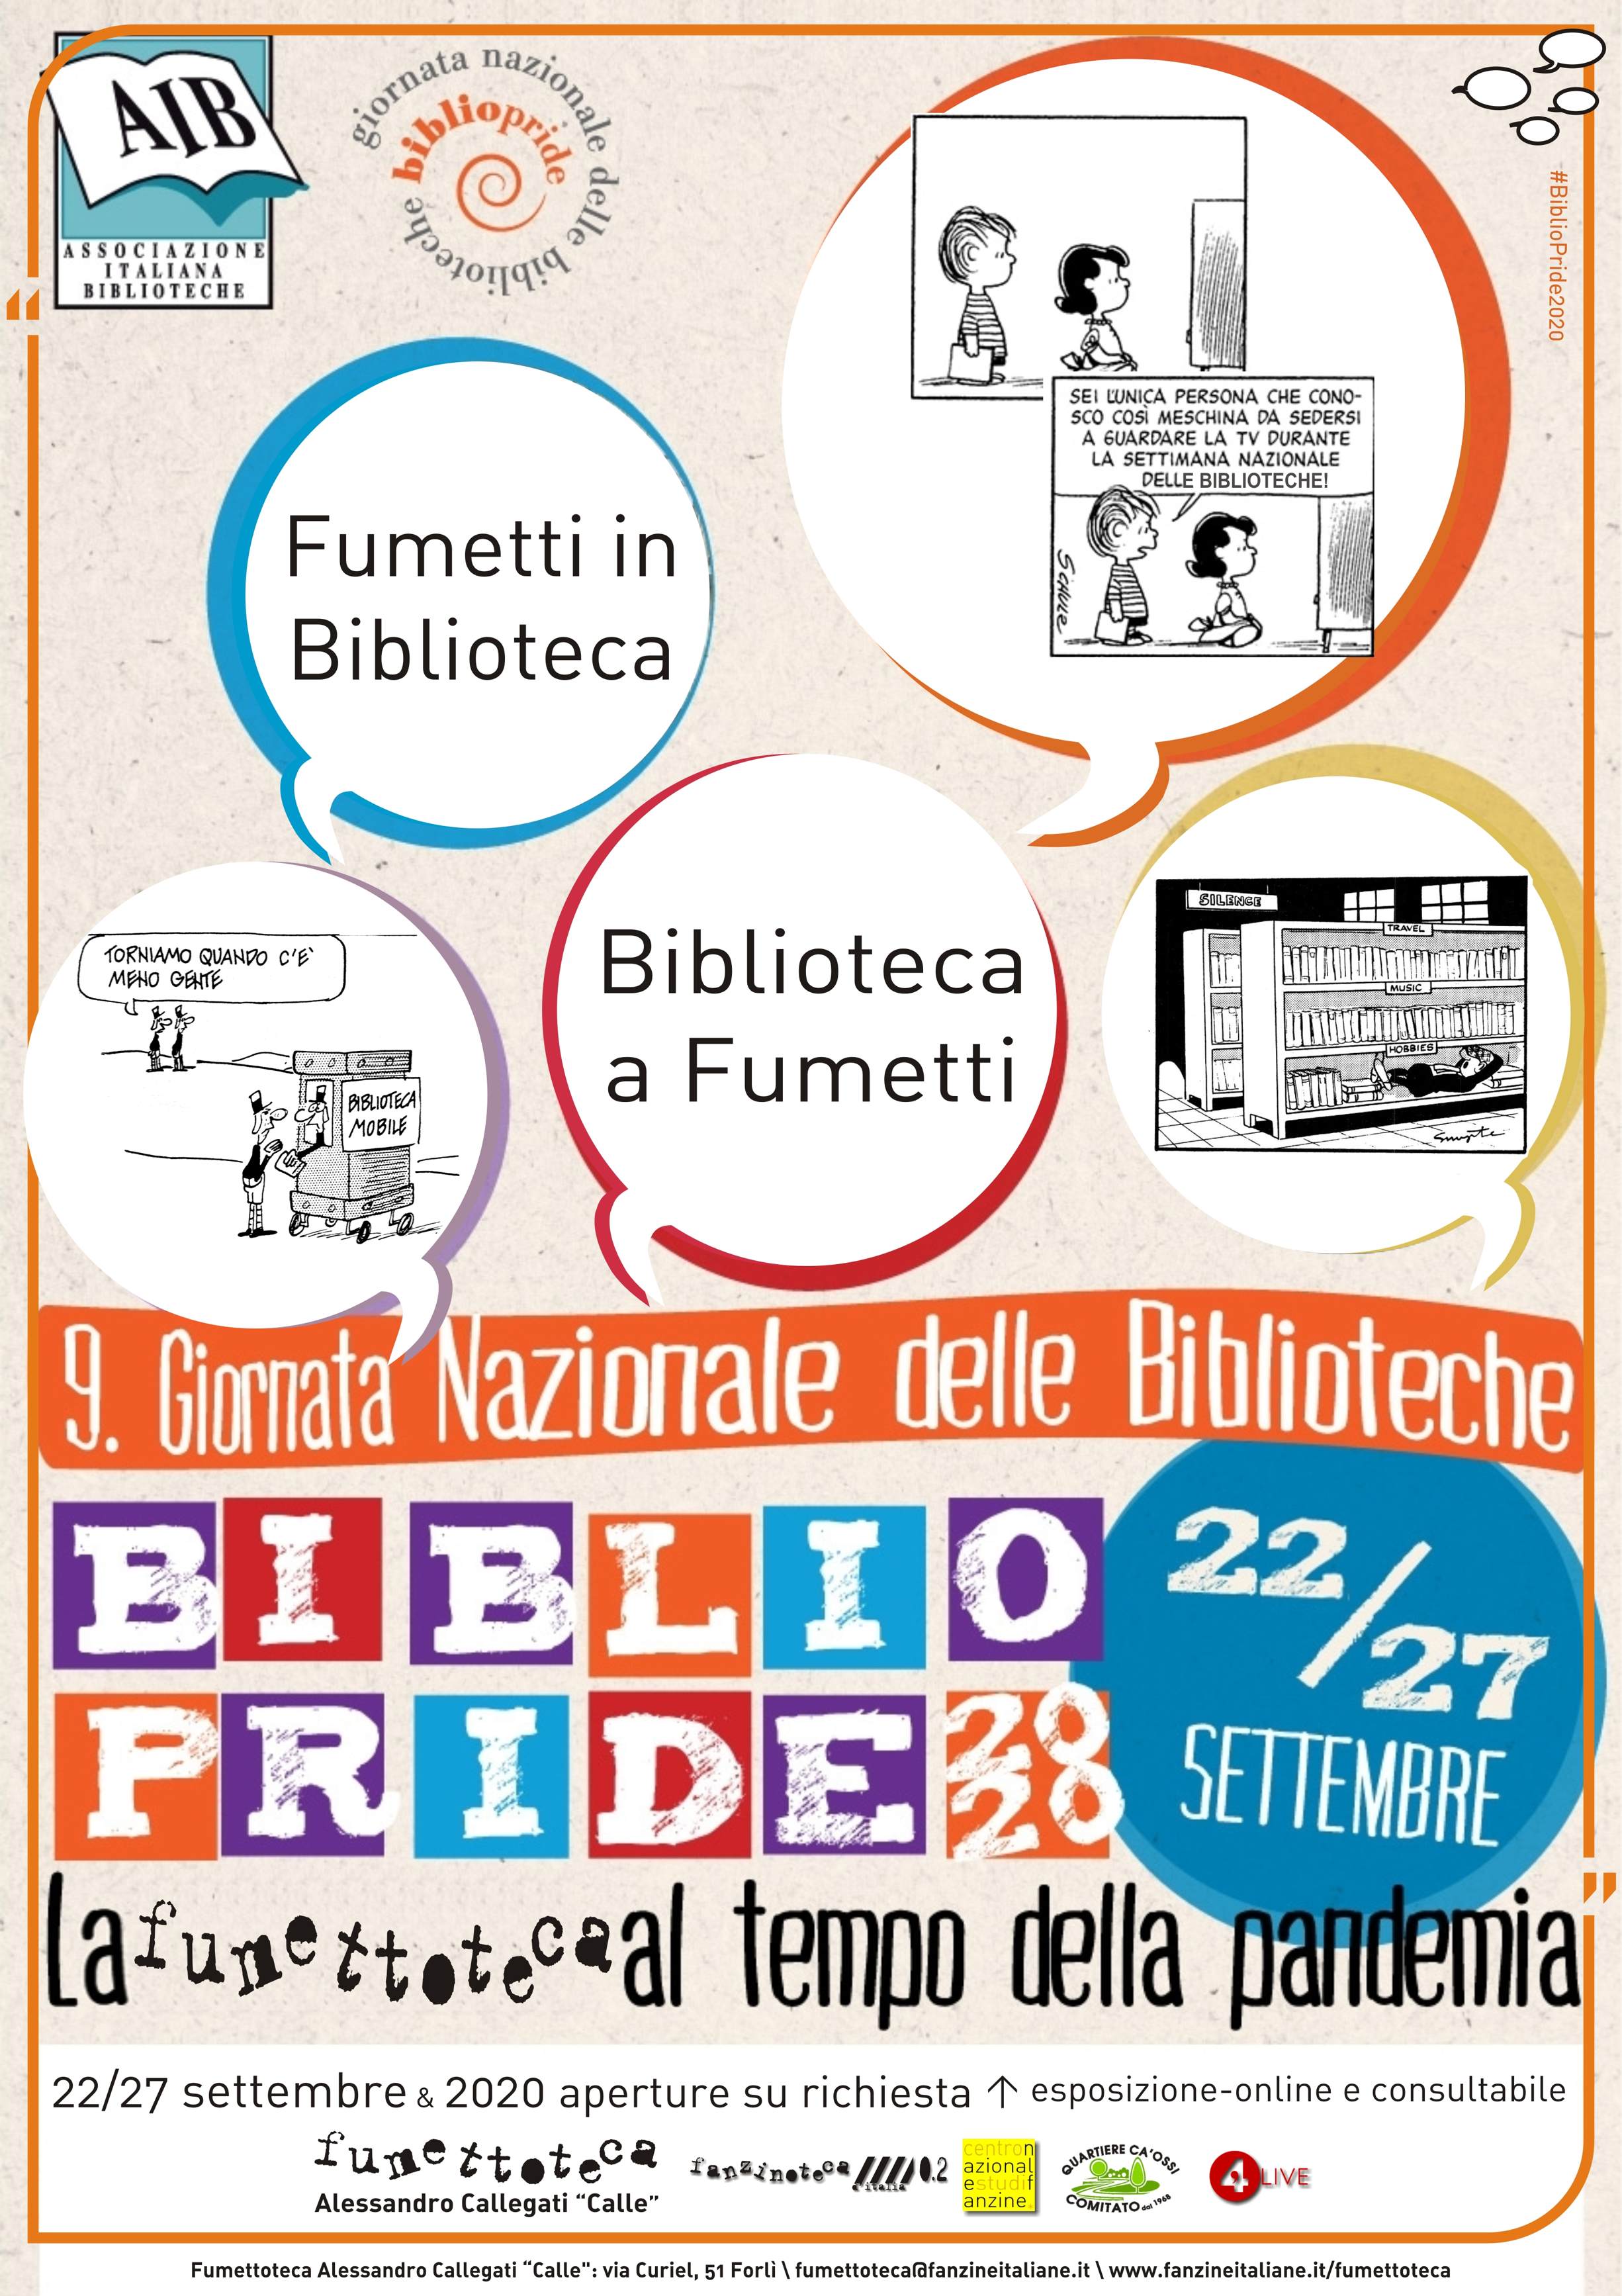 Fumettoteca Alessandro Callegati "Calle" - Fumetti in Biblioteca - Biblioteca a Fumetti! Locandina - 22-27 Settembre 2020